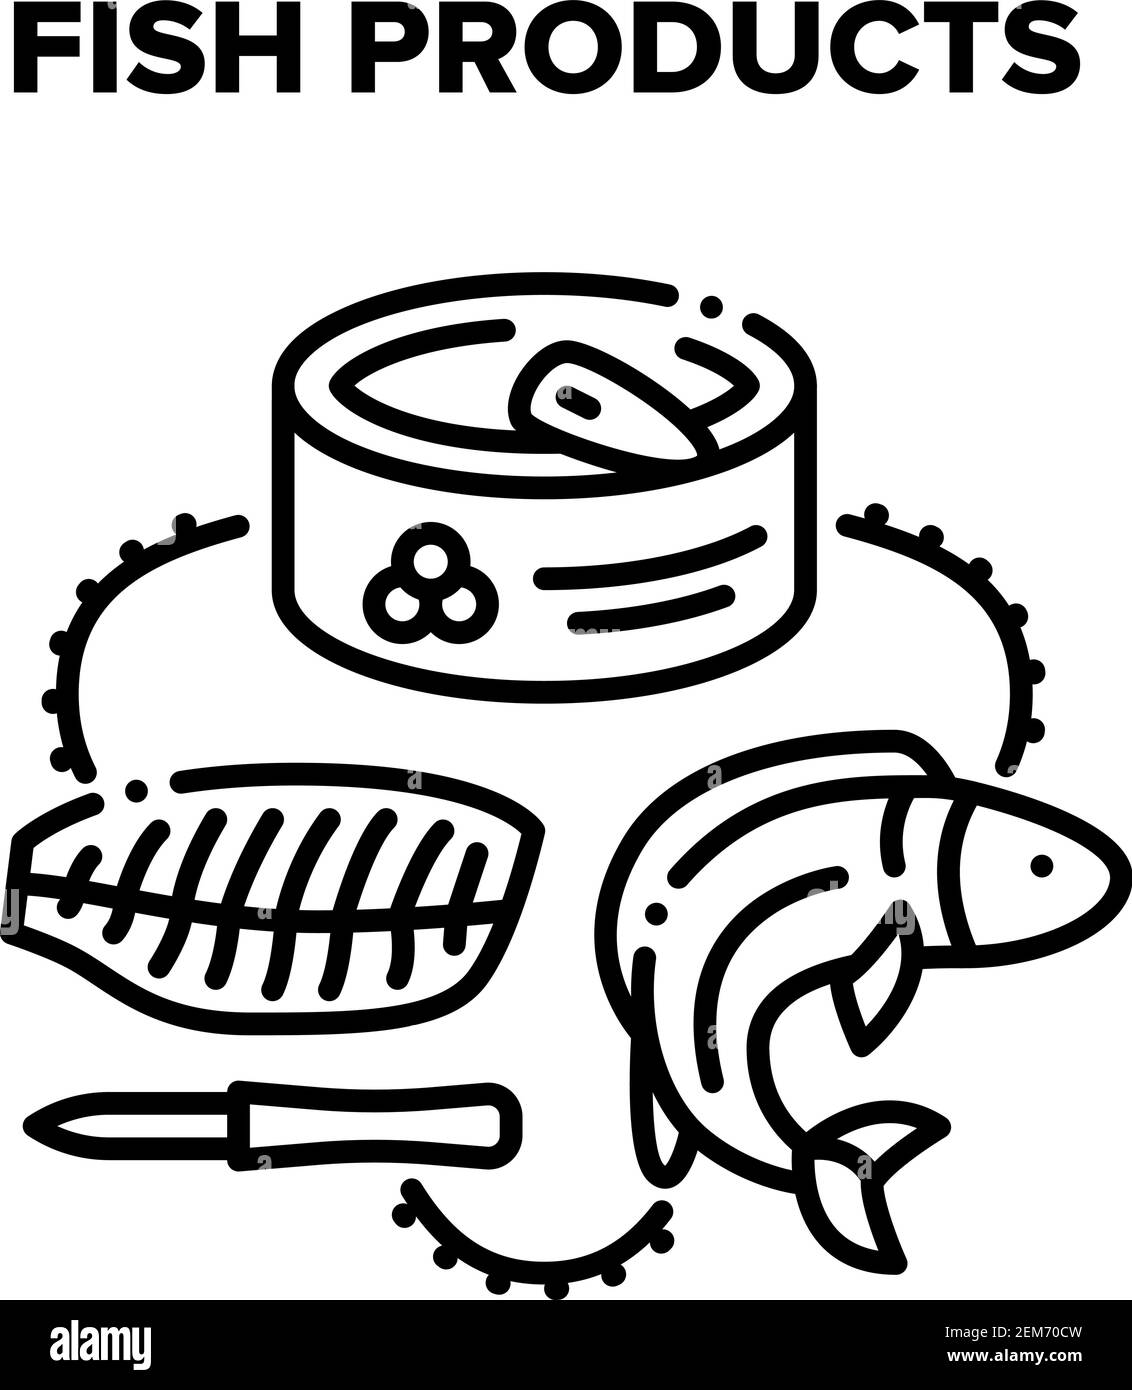 Fish Products Vector Black illustrazioni Illustrazione Vettoriale